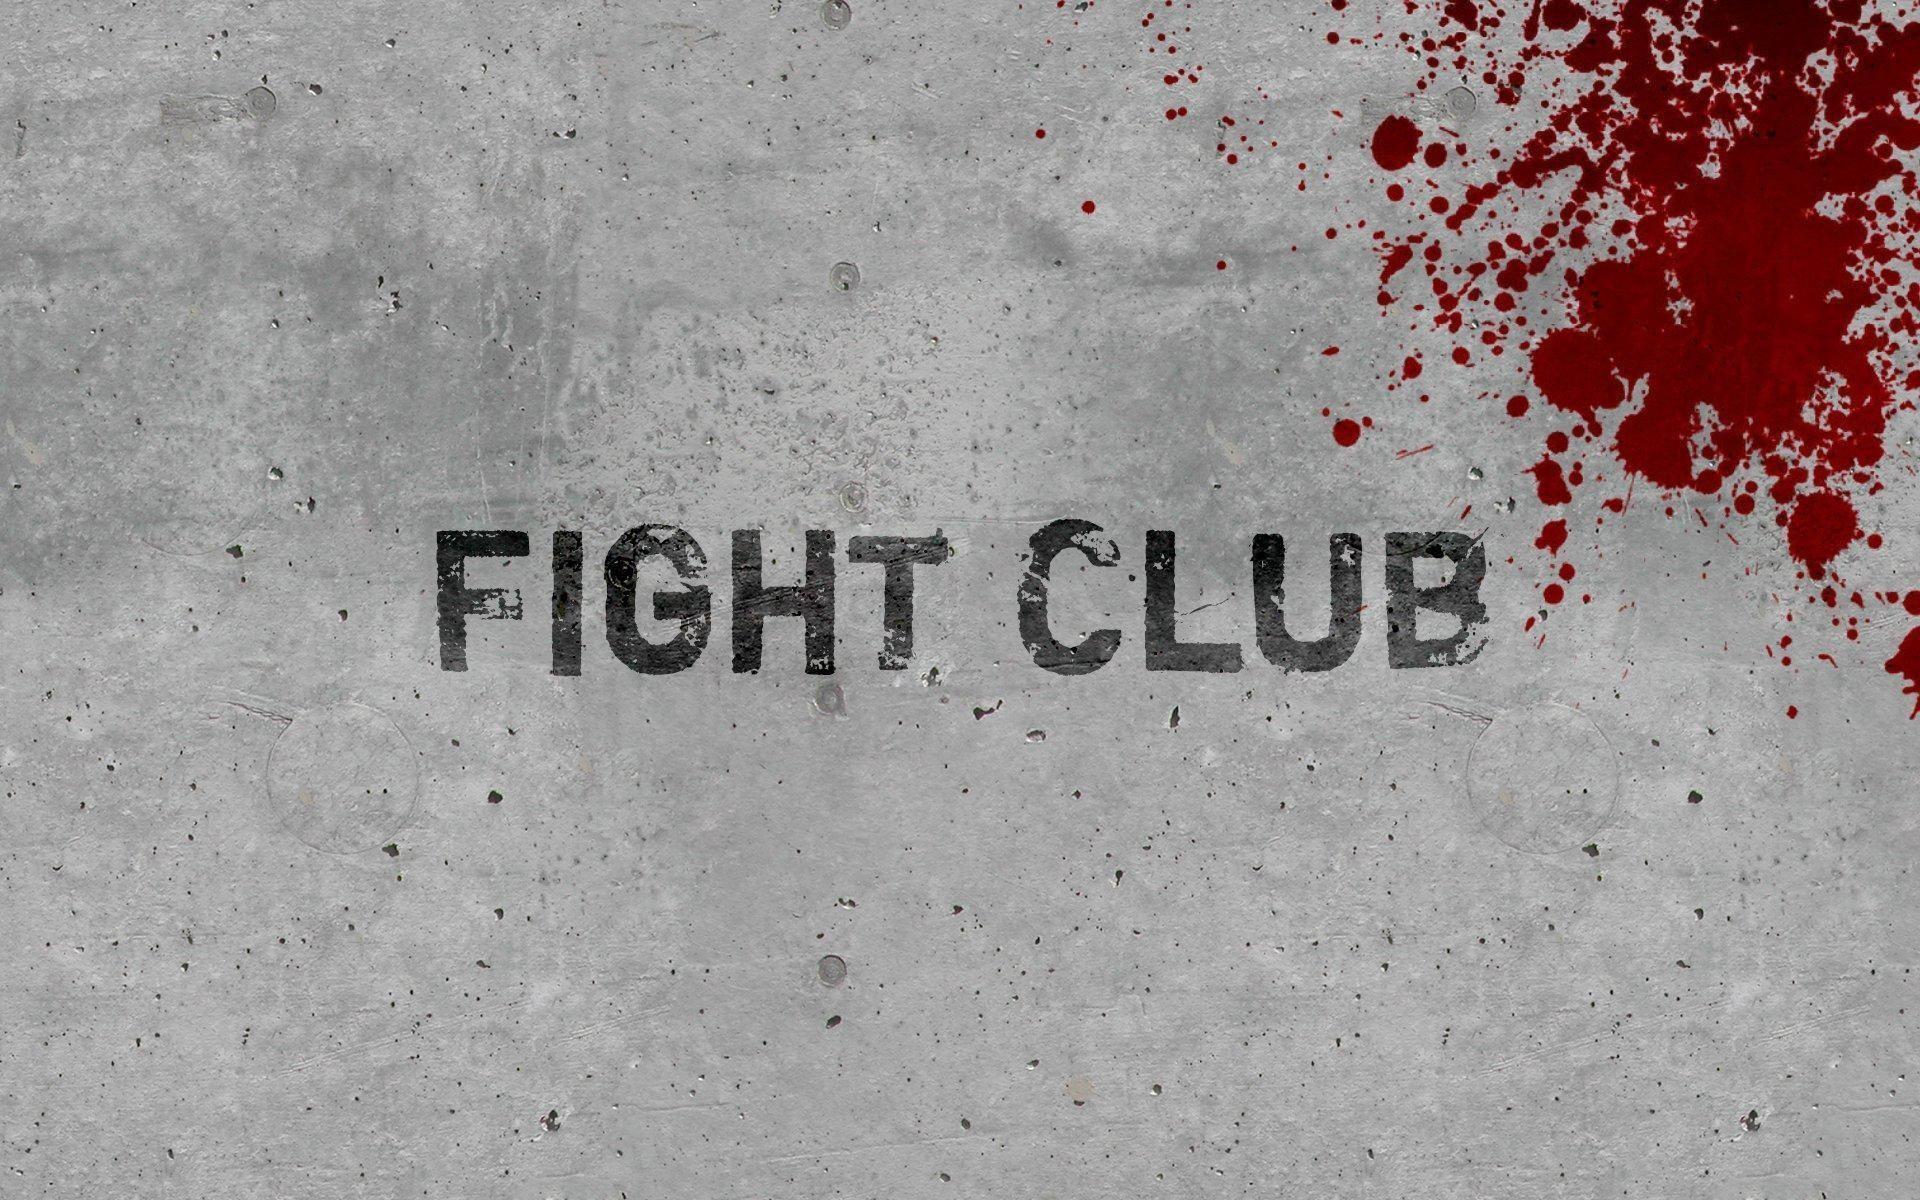 Fight club Wallpaper, Fight club Background, Fight club Free HD